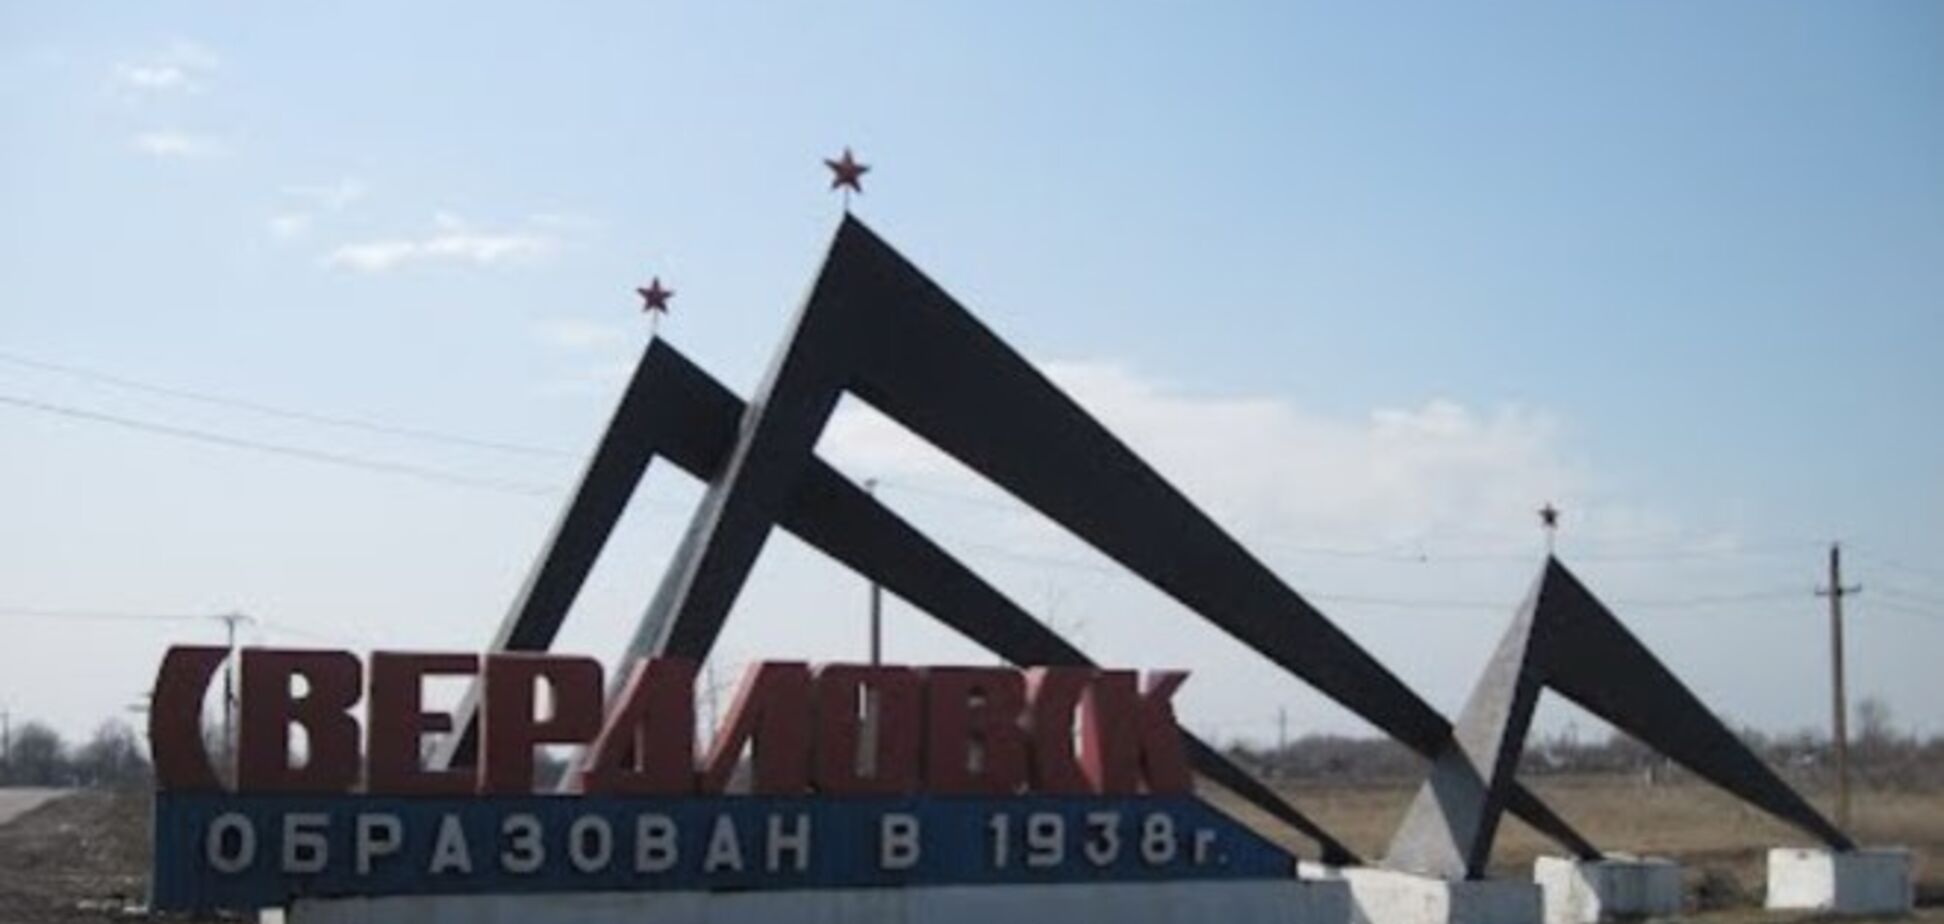 Жители Свердловска на митинге потребовали от боевиков 'уйти за поребрик'